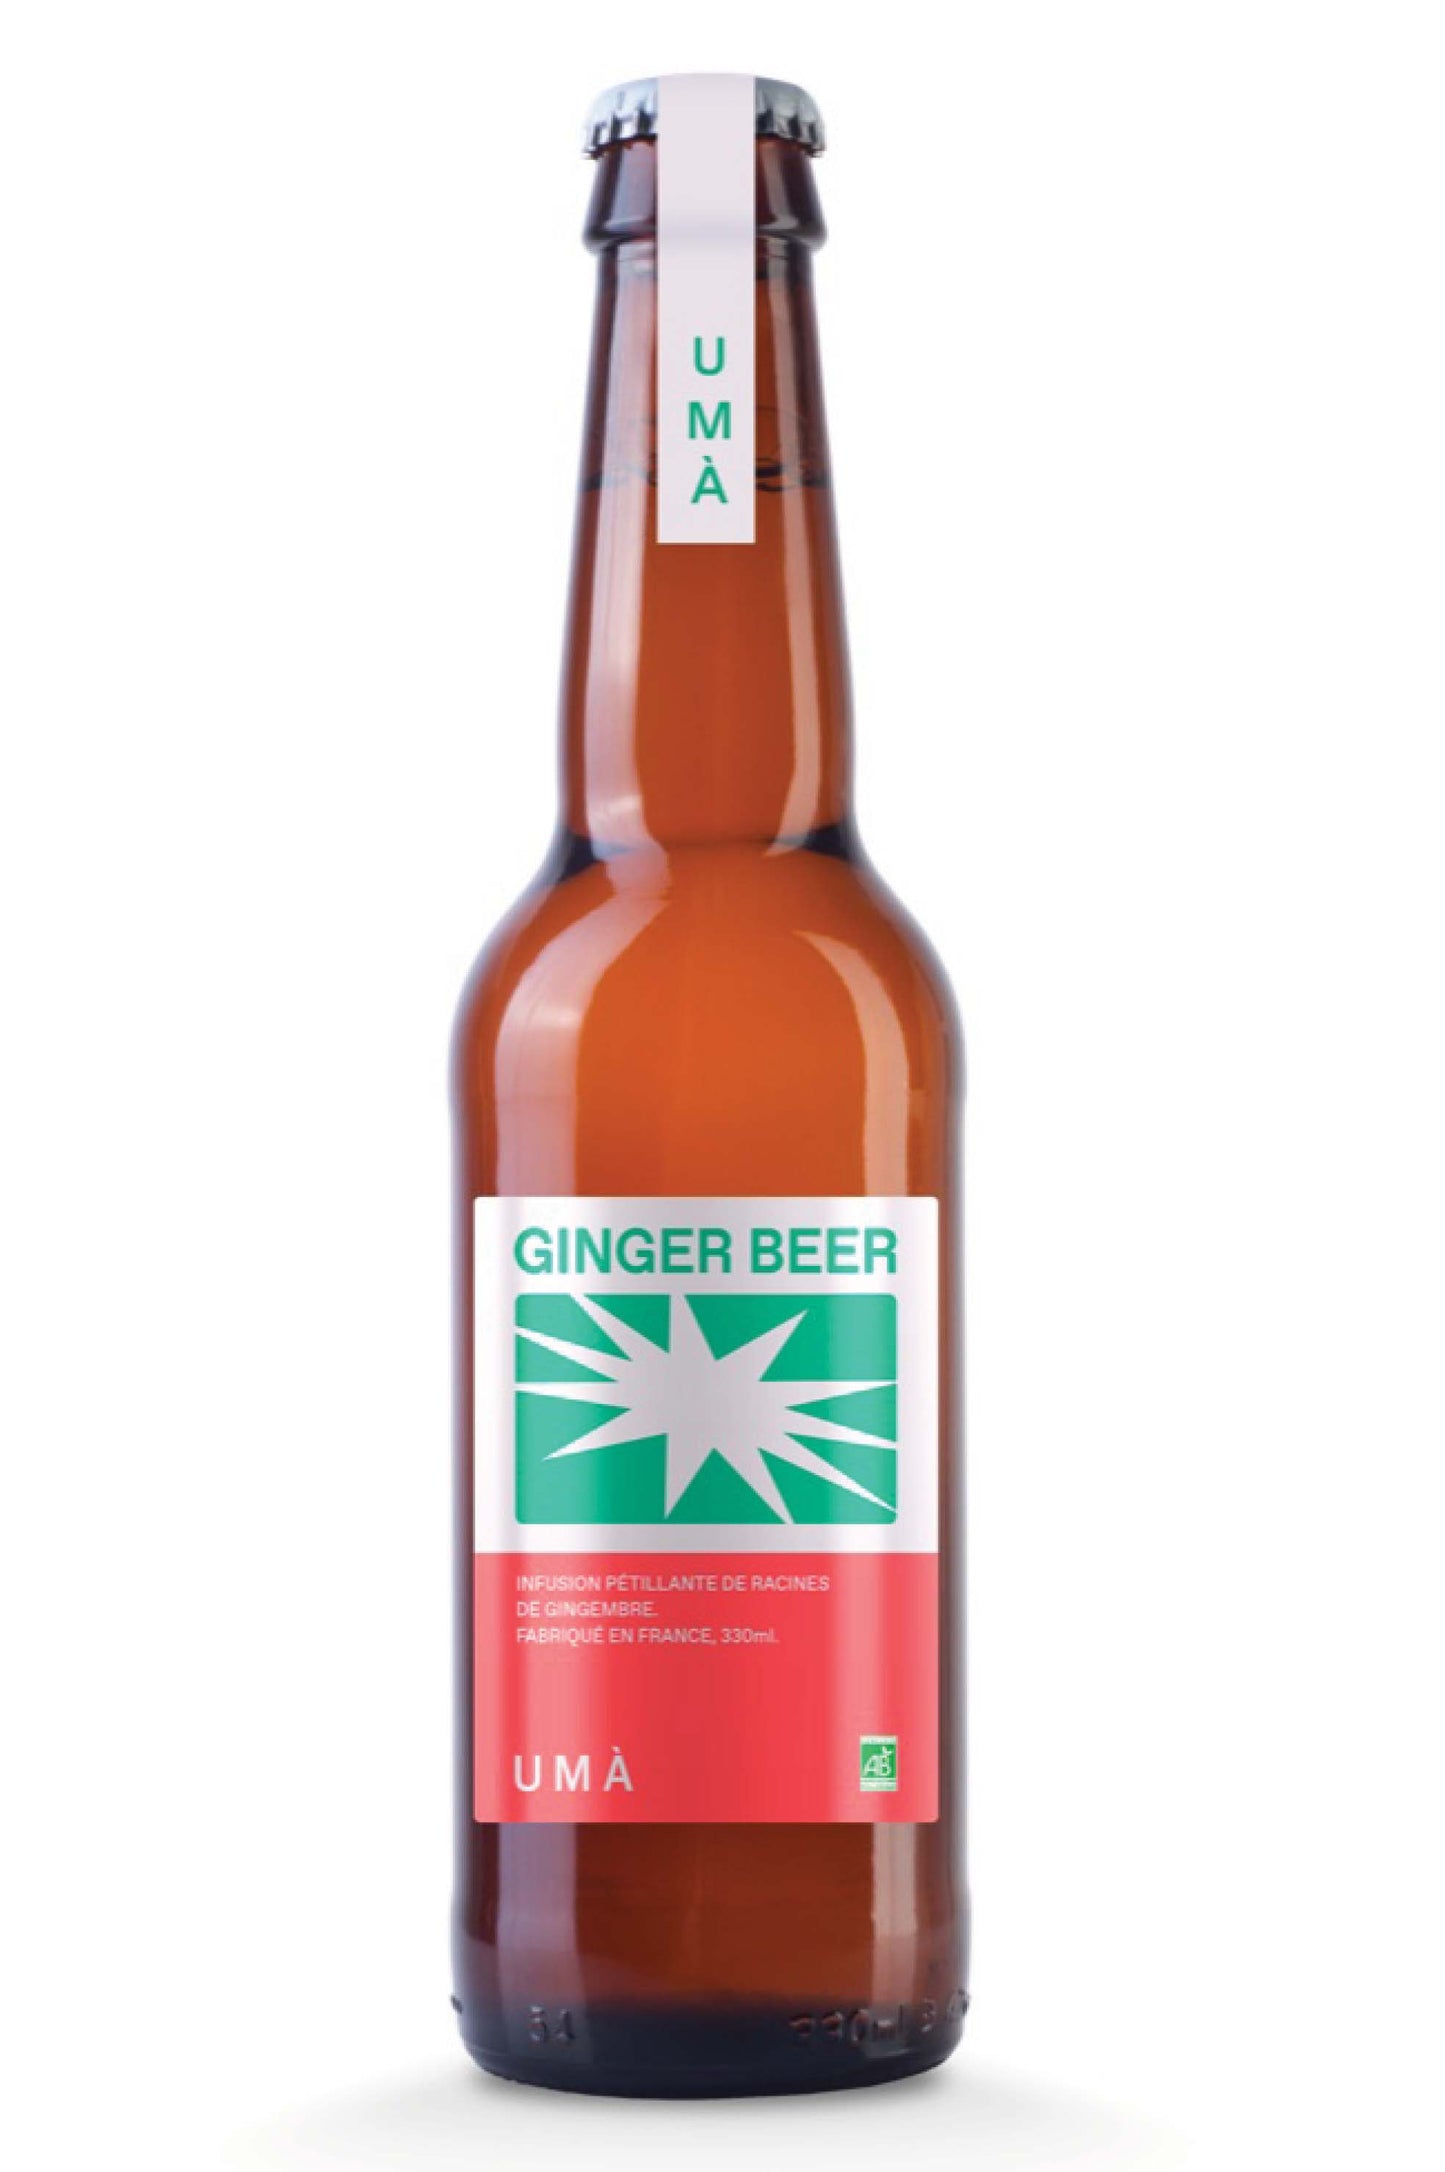 UMÀ - Ginger beer 33cl